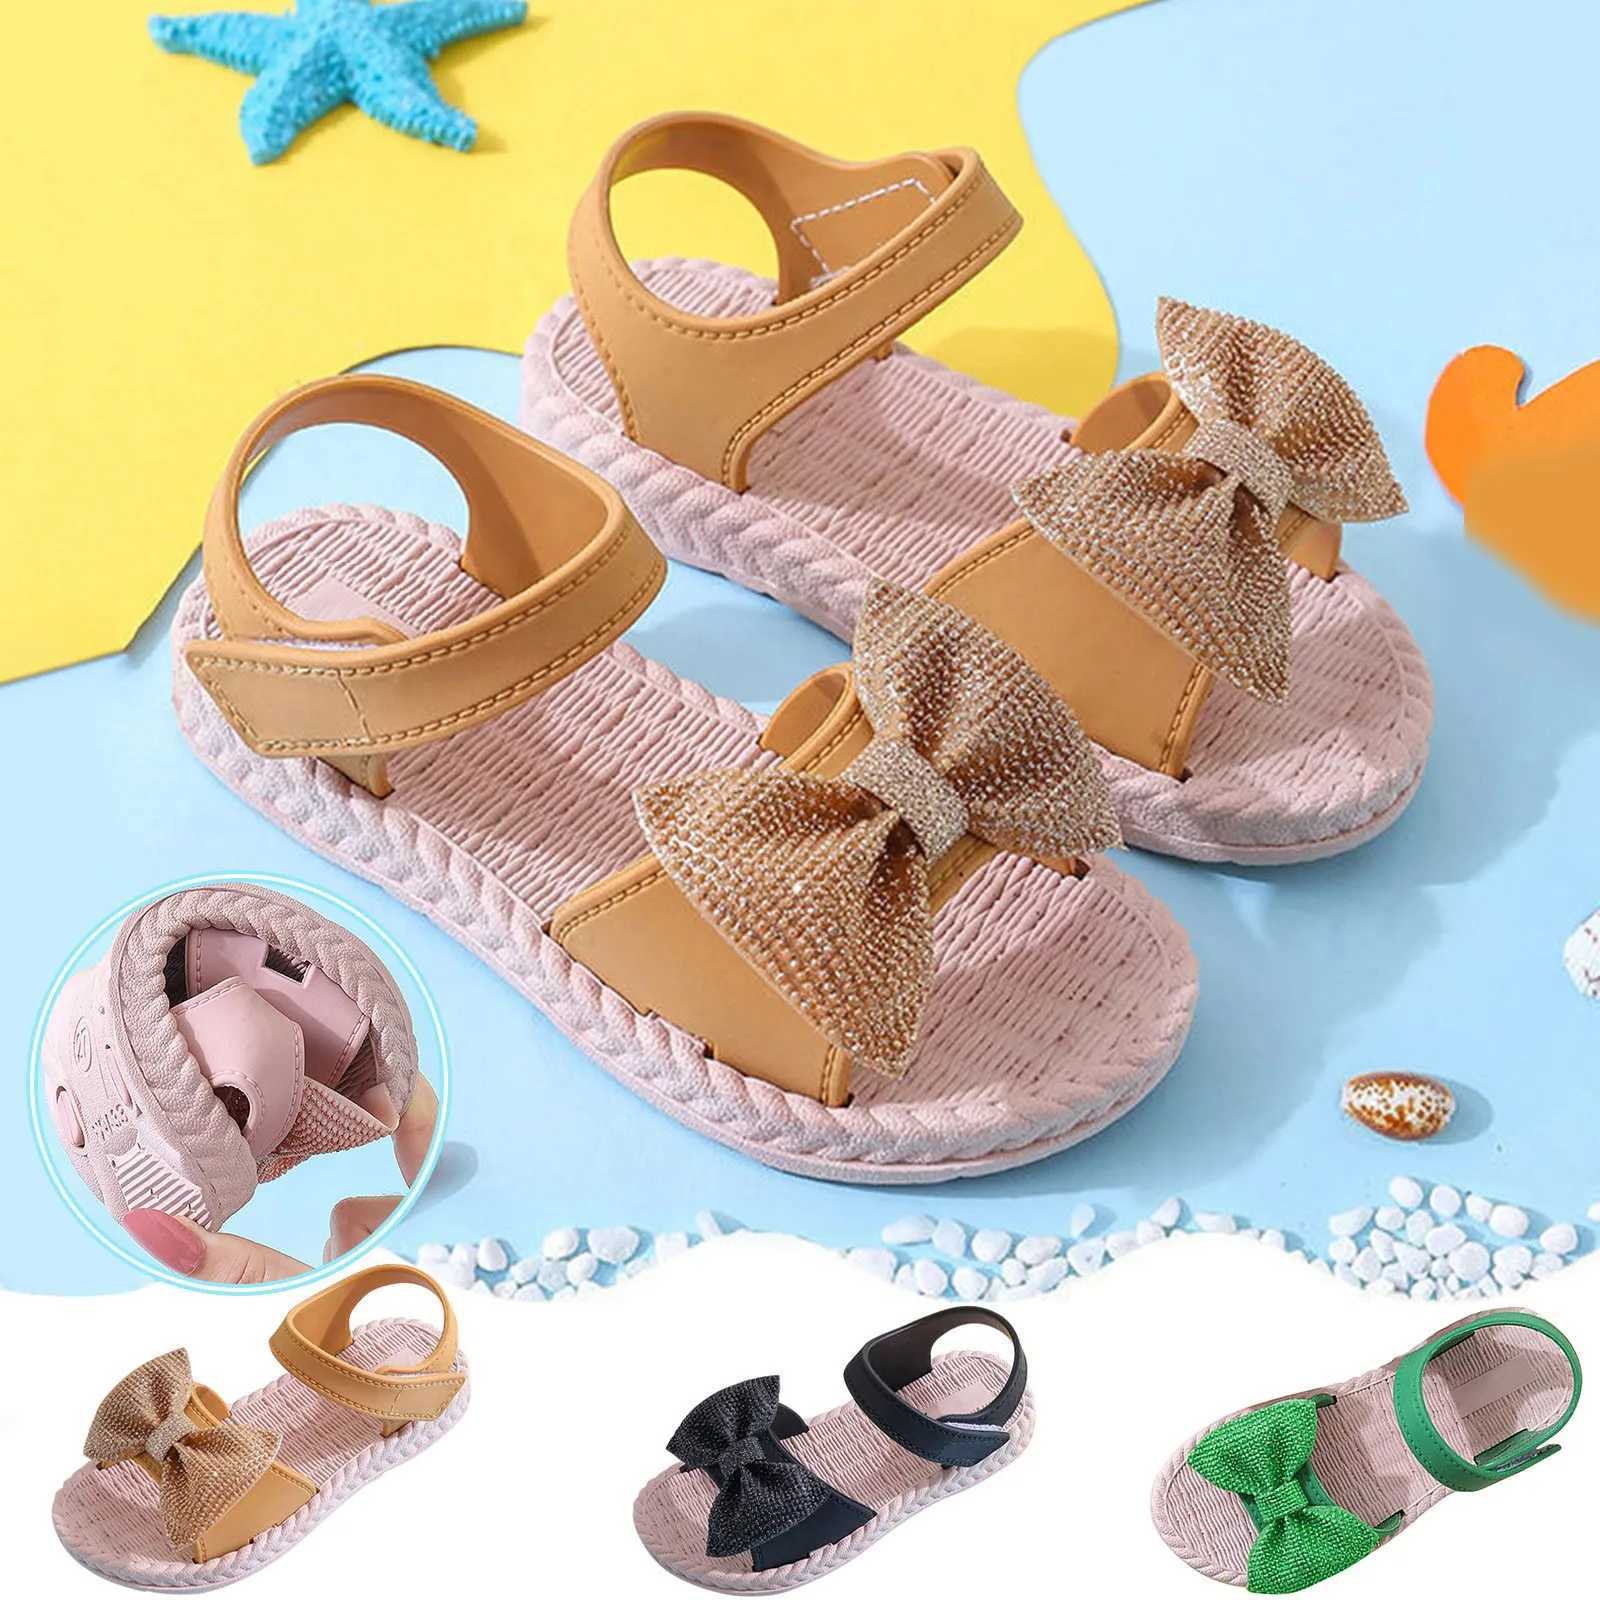 Slipper Girls Sandals Summer Silent милая милая ботинка принцесса сандалии повседневная воздухопроницаемая пляжная детская обувь пляж